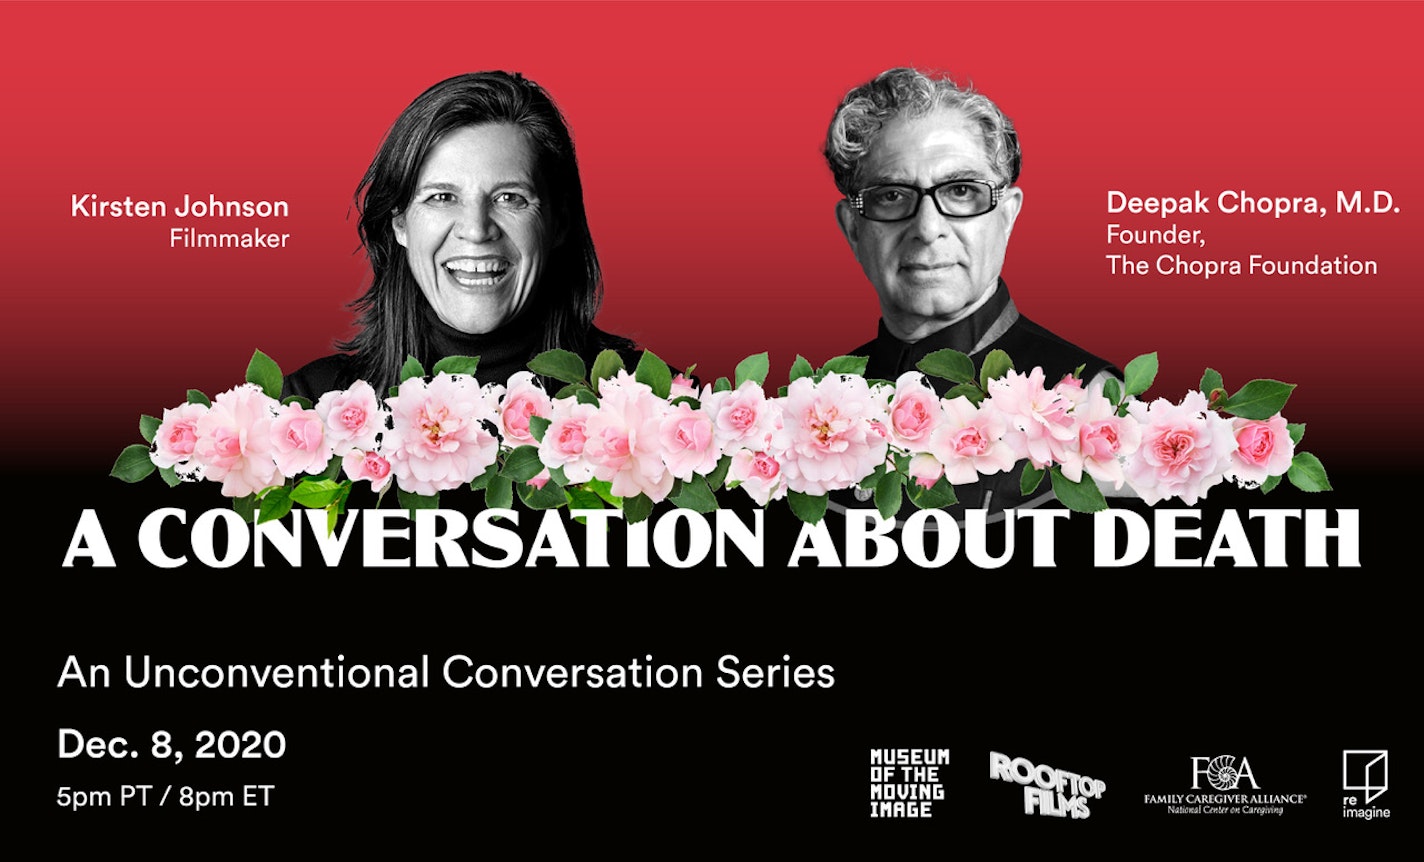 Deepak Chopra & Kirsten Johnson in a Conversation about Death